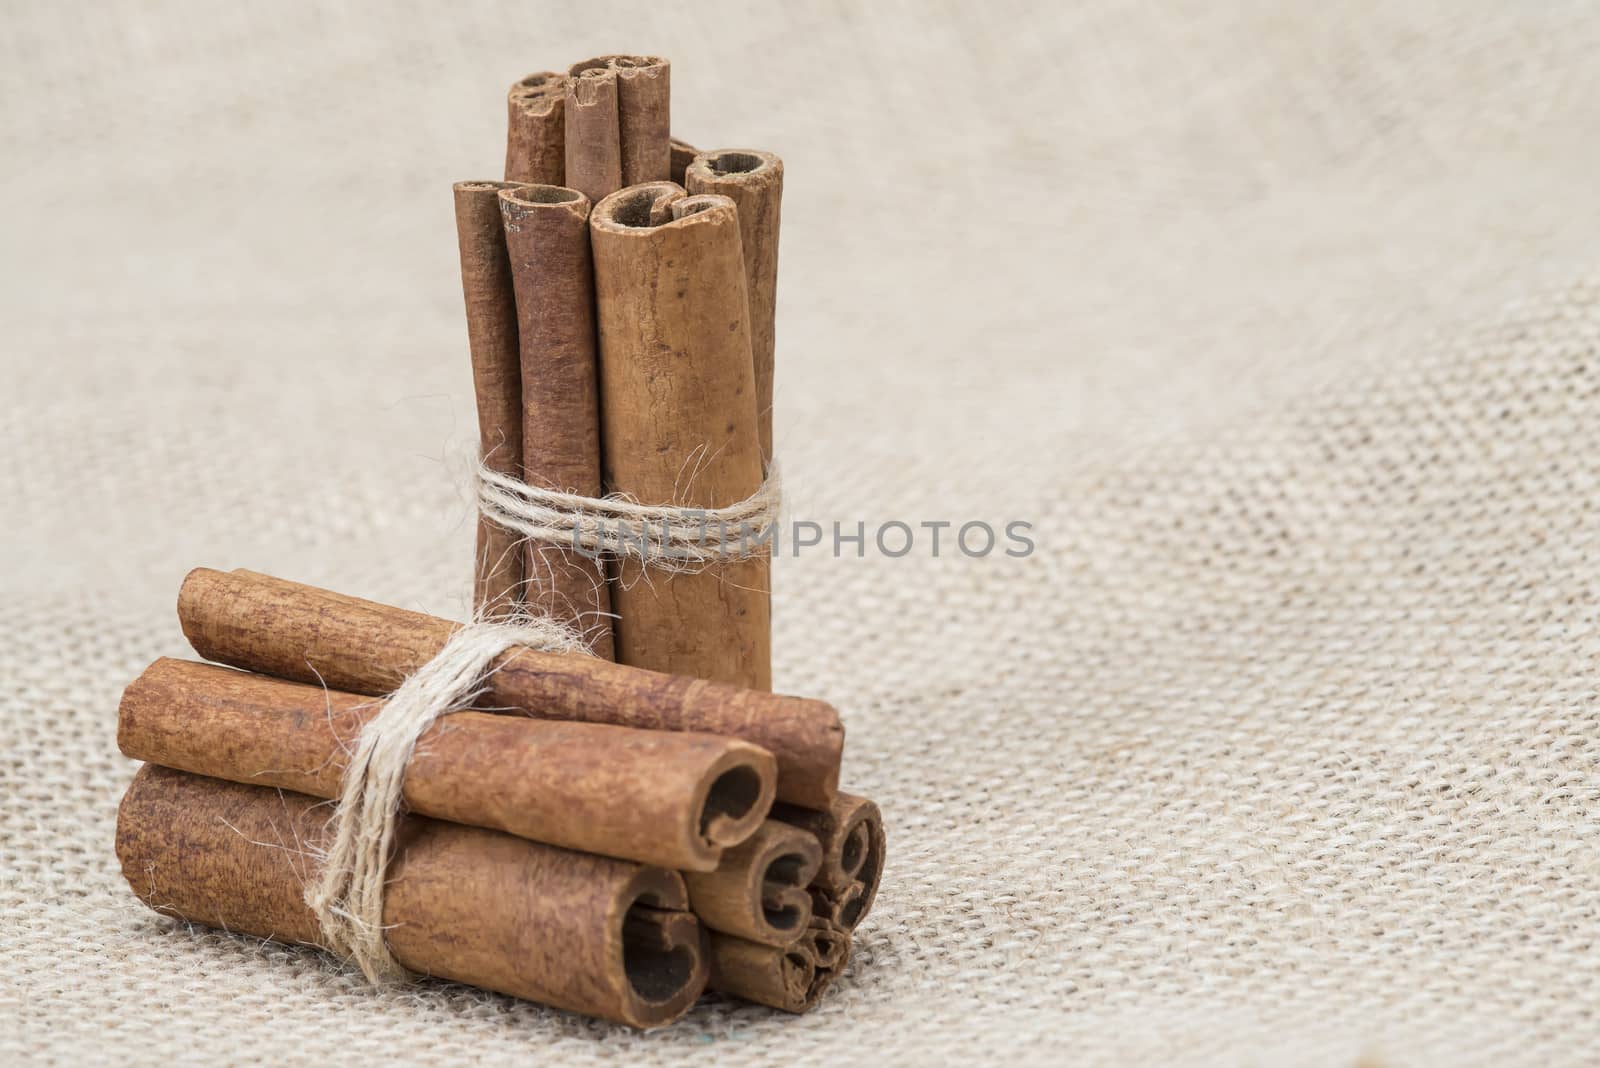 Cinnamon sticks on a piece of burlap